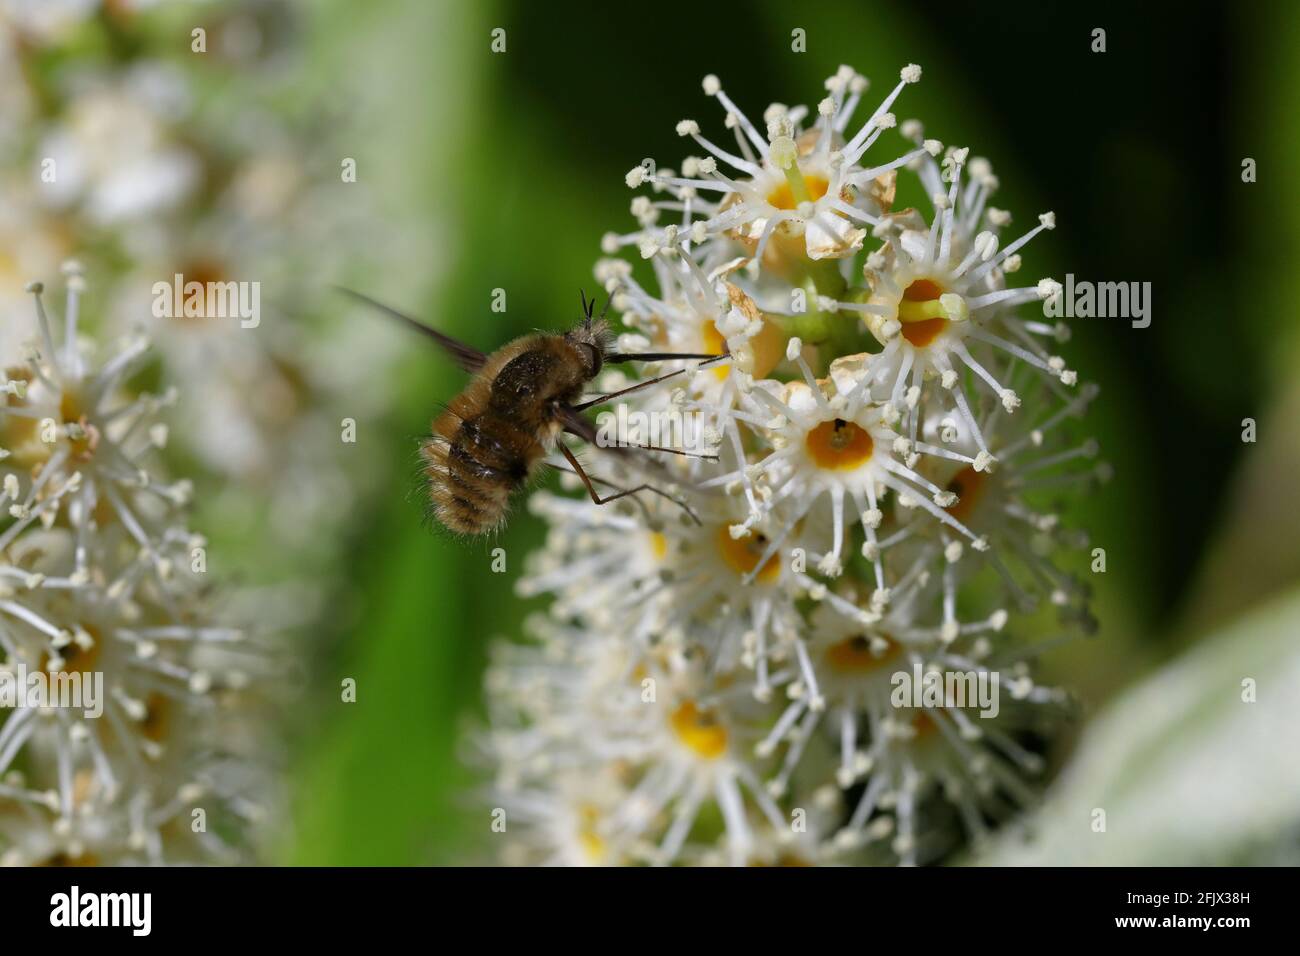 Eine Bienenfliege mit dunklen Kanten (Bombylius major), die sich von den weißen Blüten eines Kirschlaurels (Prunus laurocerasus) ernährt Stockfoto